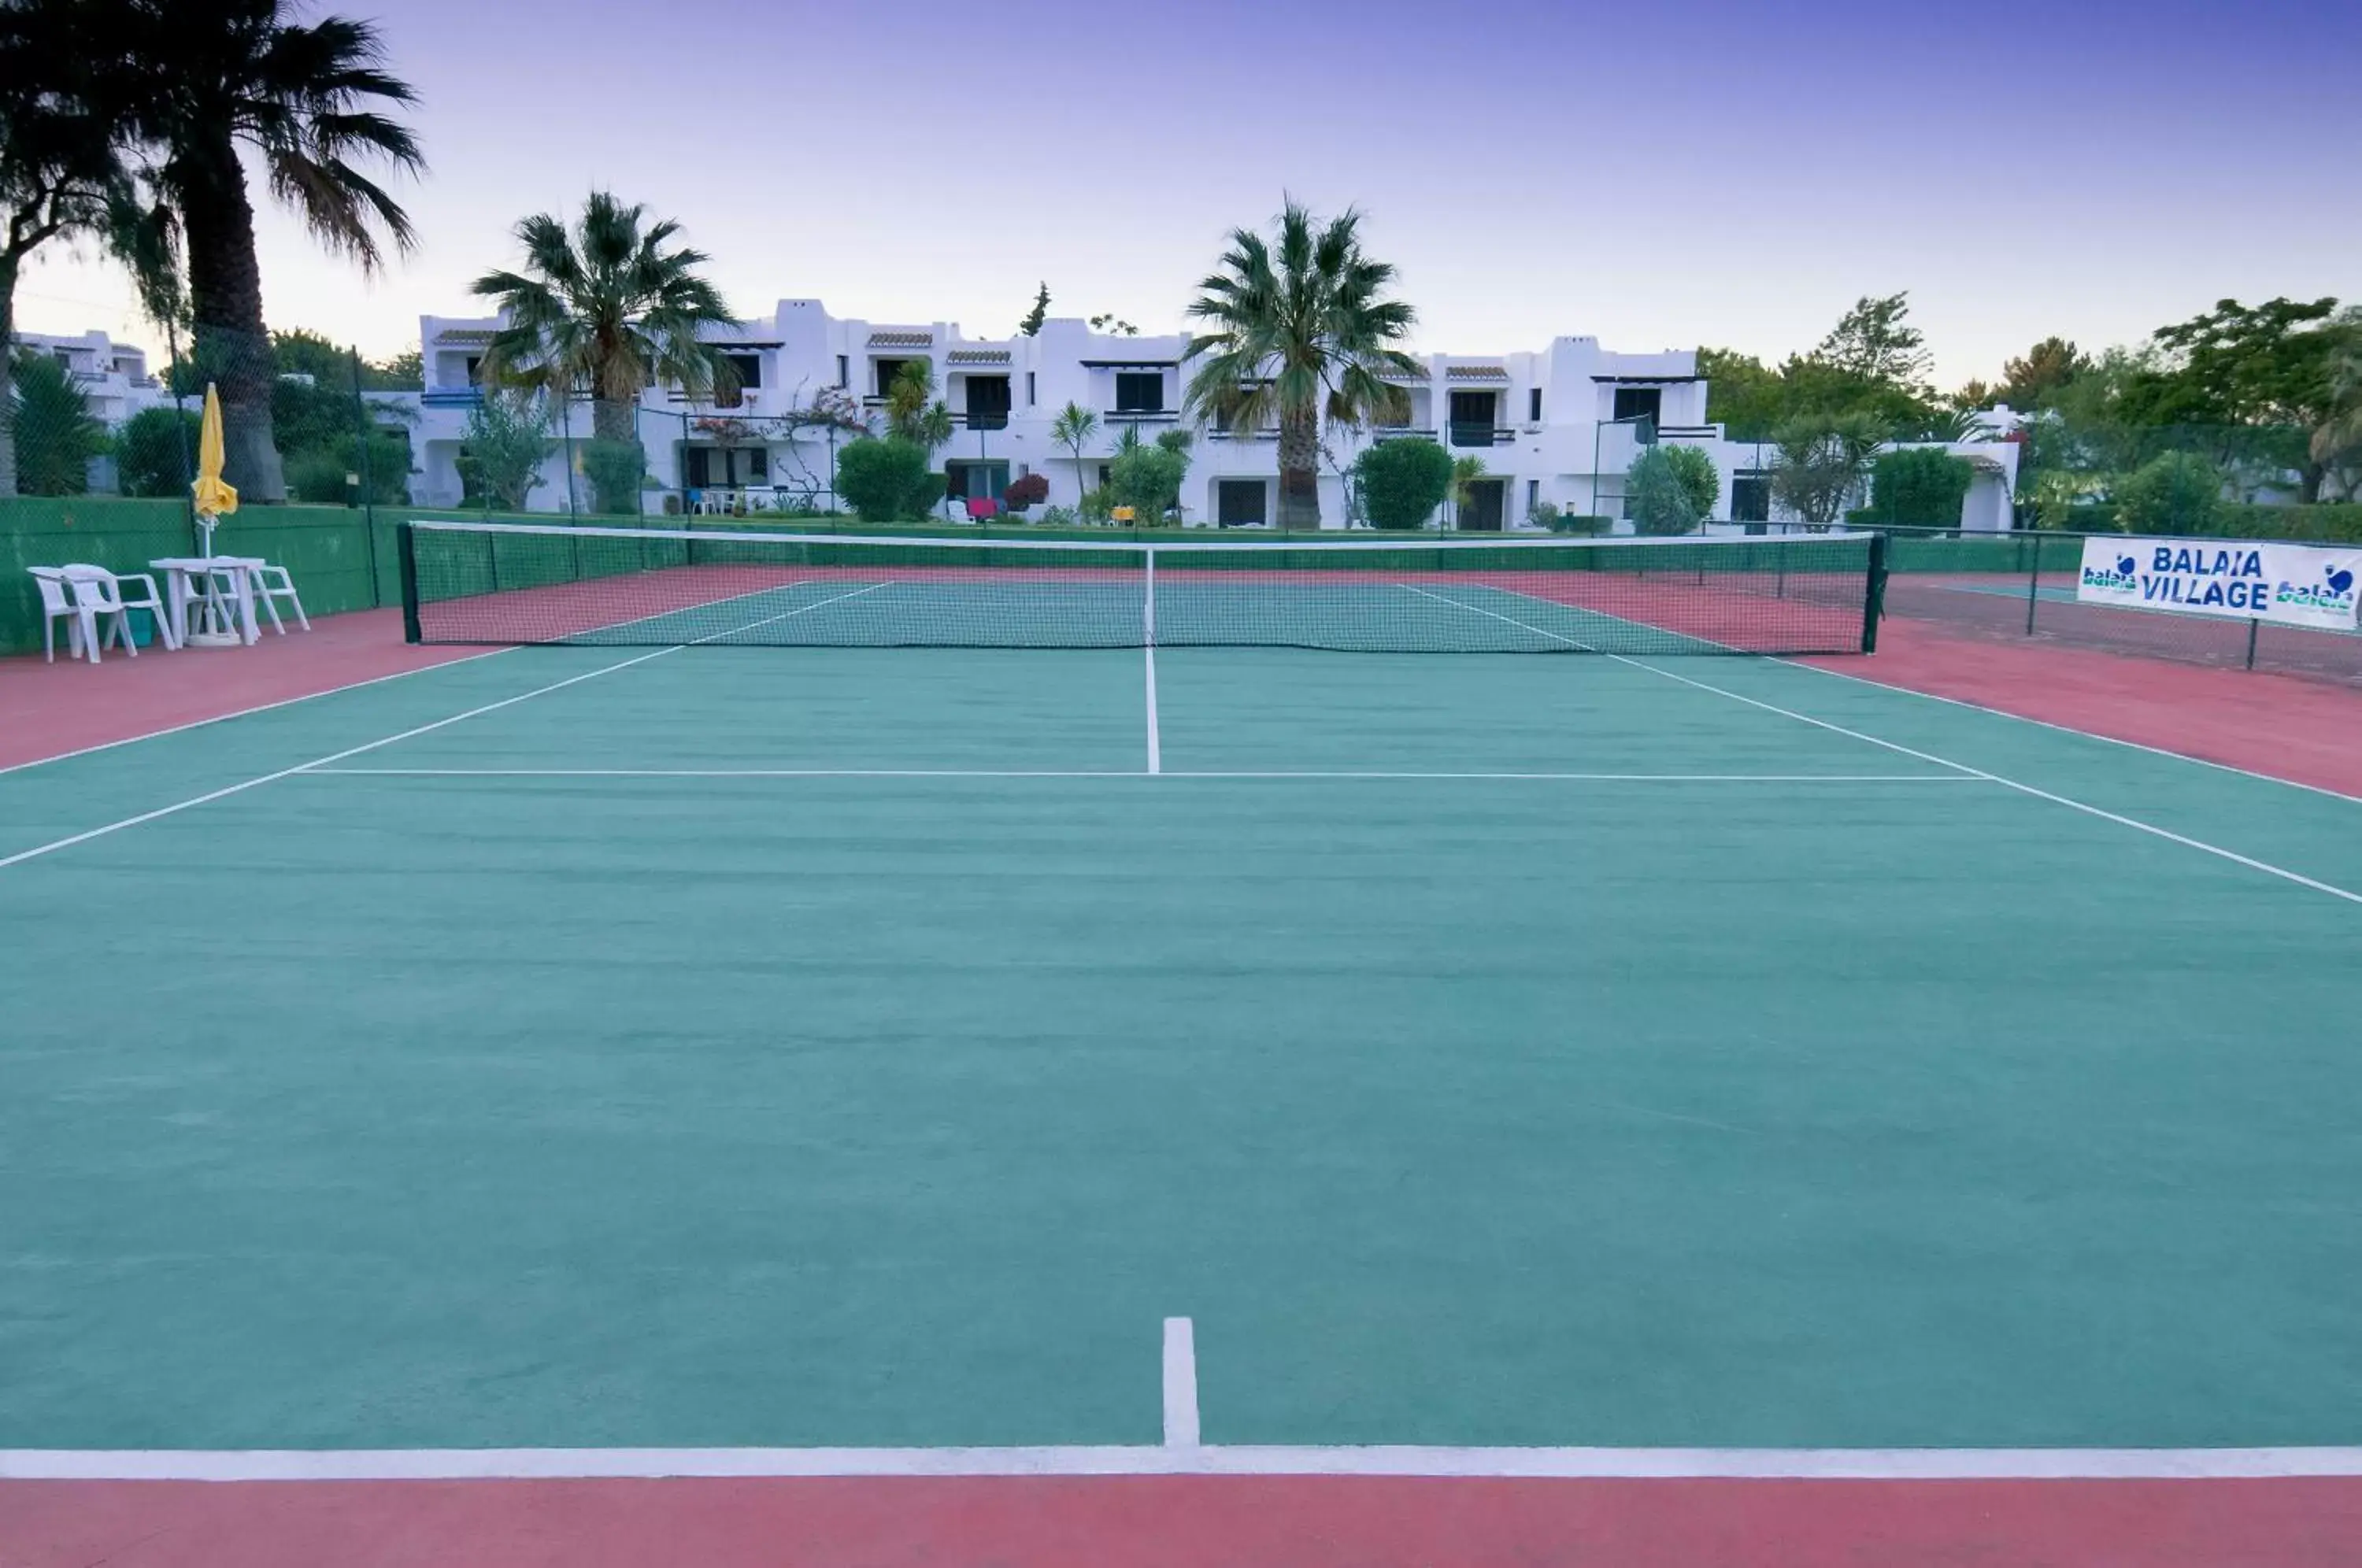 Tennis court, Tennis/Squash in Balaia Golf Village